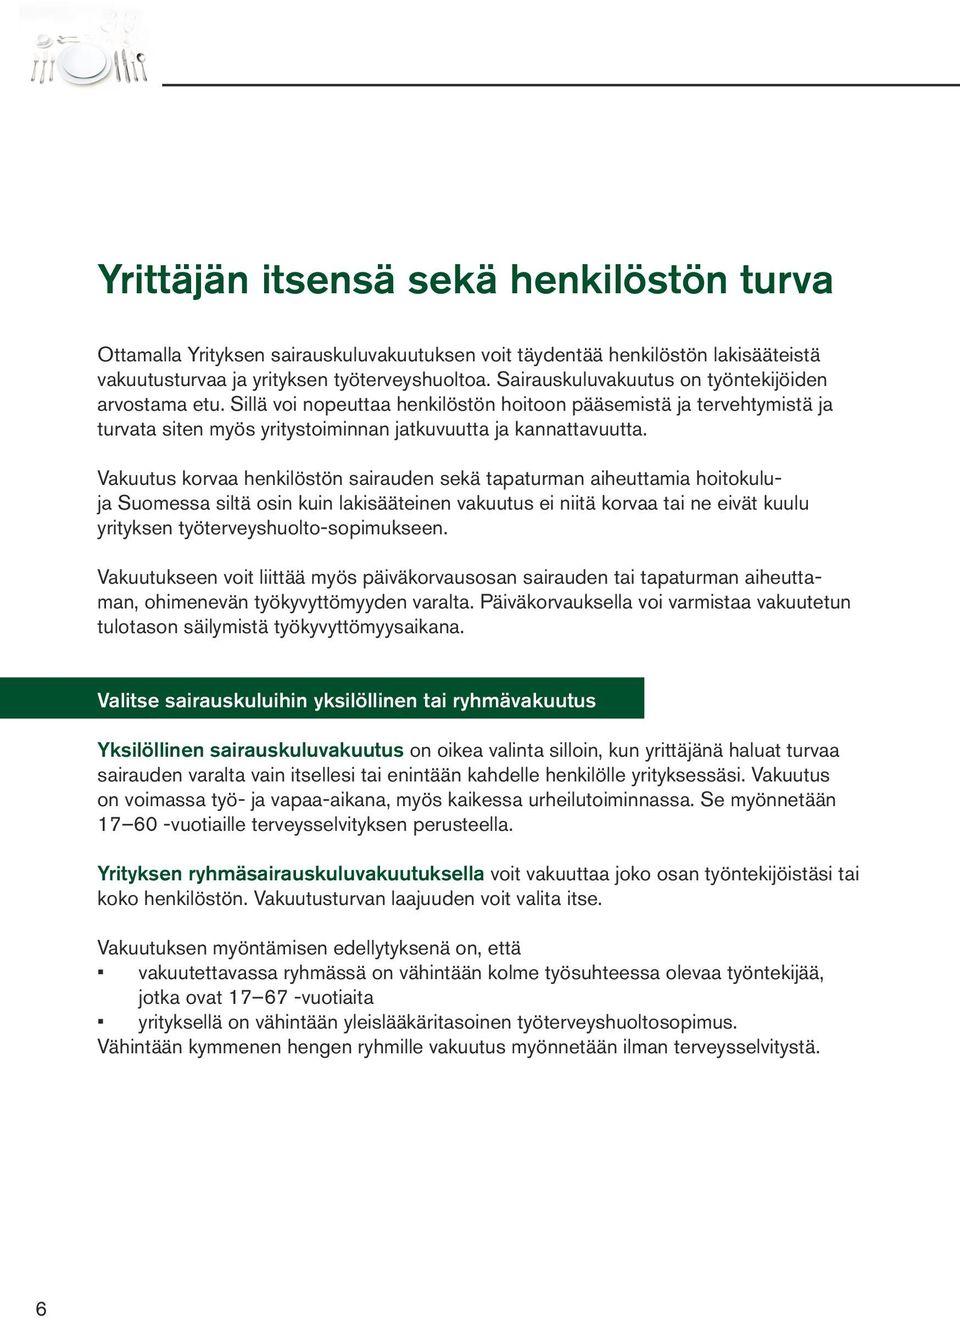 Vakuutus korvaa henkilöstön sairauden sekä tapaturman aiheuttamia hoitokuluja Suomessa siltä osin kuin lakisääteinen vakuutus ei niitä korvaa tai ne eivät kuulu yrityksen työterveyshuolto-sopimukseen.